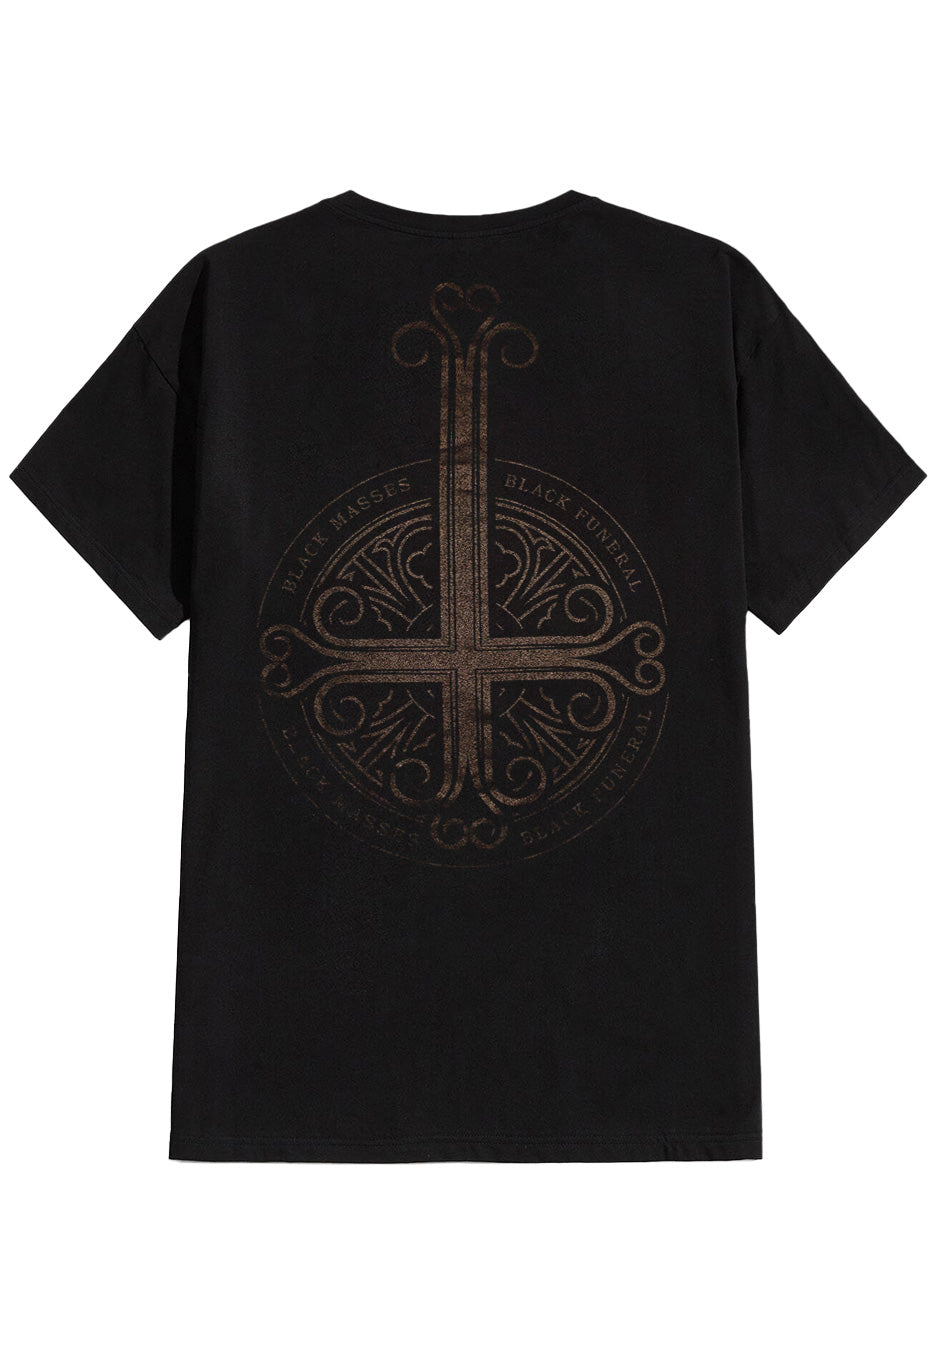 Mercyful Fate - Black Funeral Cross - T-Shirt